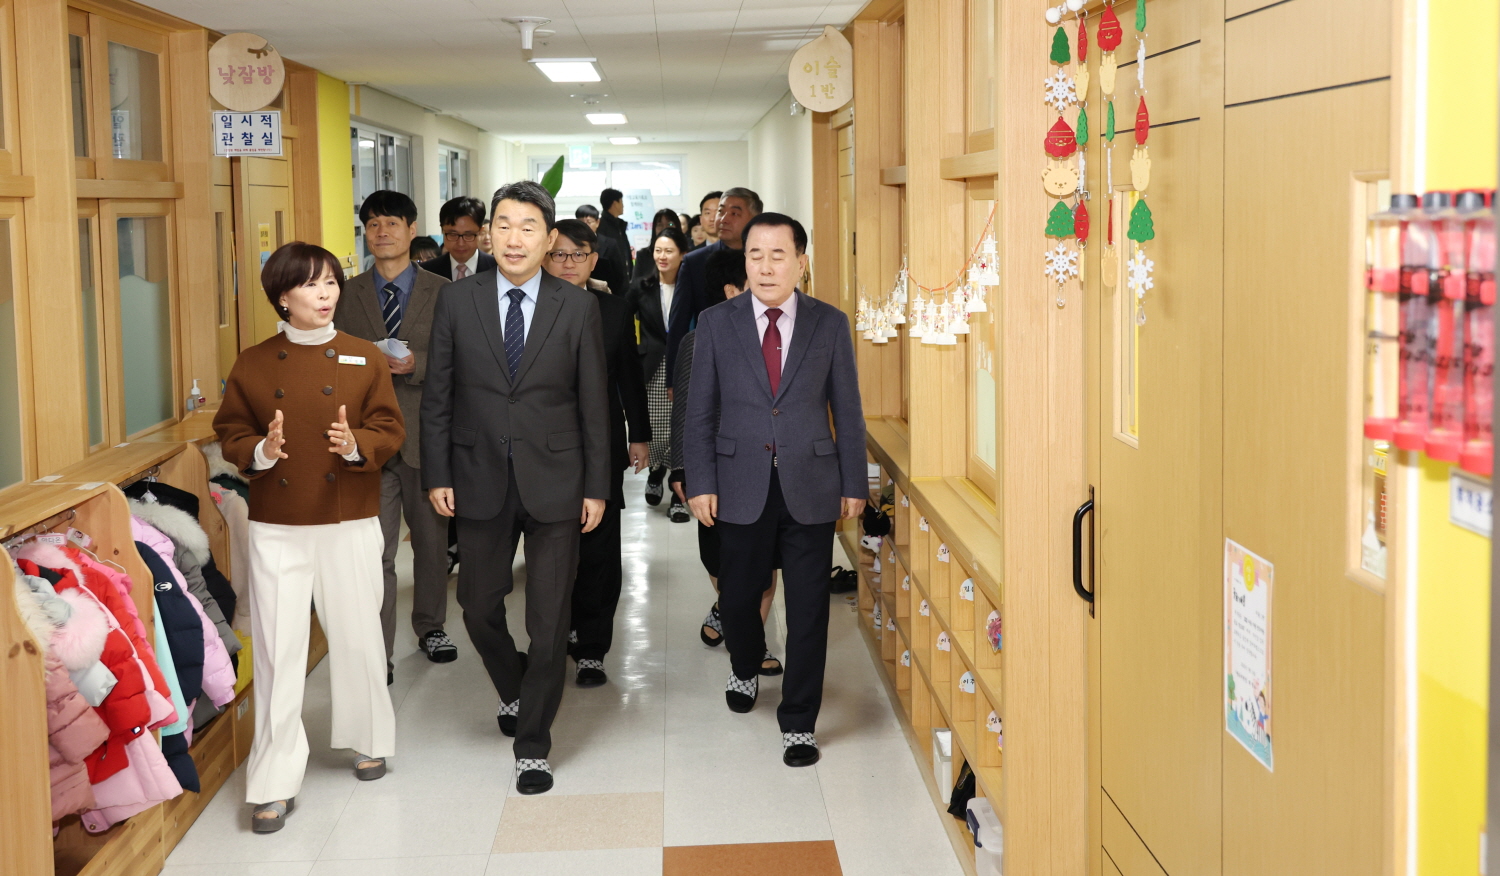 이주호 부총리 겸 교육부장관은 1월 15일(월), 충청남도 홍성군에 위치한 가람유치원을 방문했다.